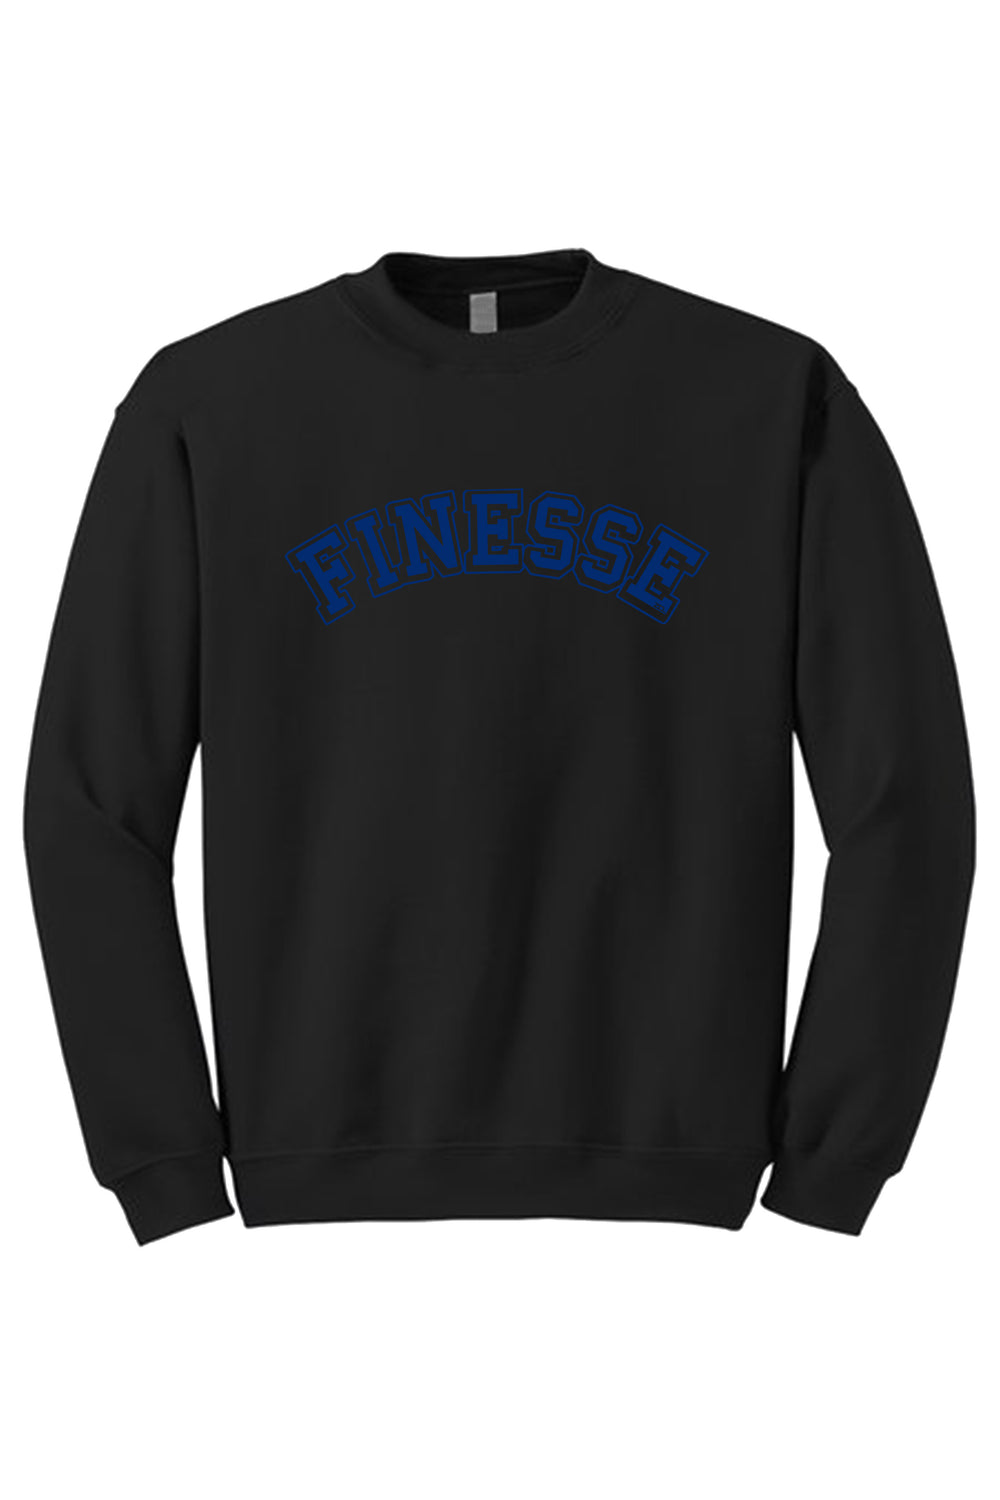 Finesse Crewneck Sweatshirt (Royal Blue Logo) - Zamage